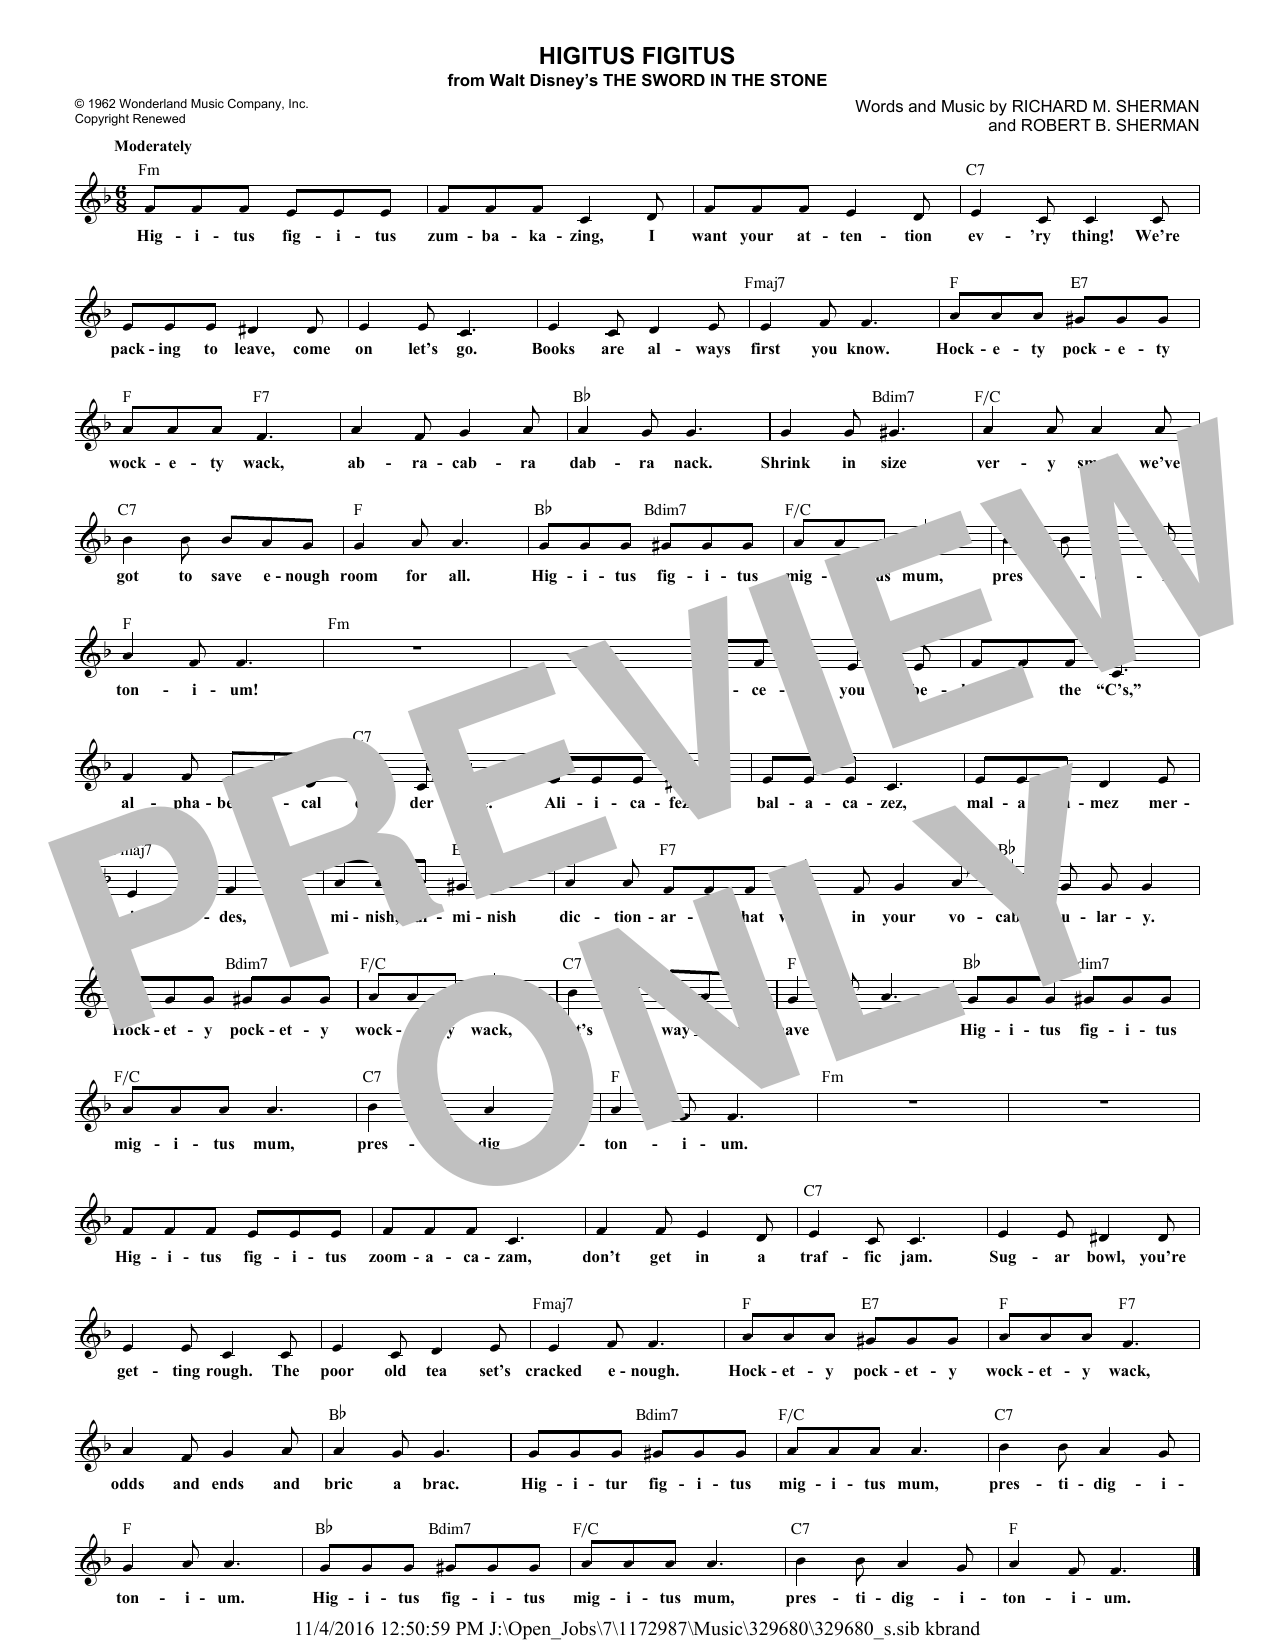 Robert B. Sherman Higitus Figitus Sheet Music Notes & Chords for Melody Line, Lyrics & Chords - Download or Print PDF